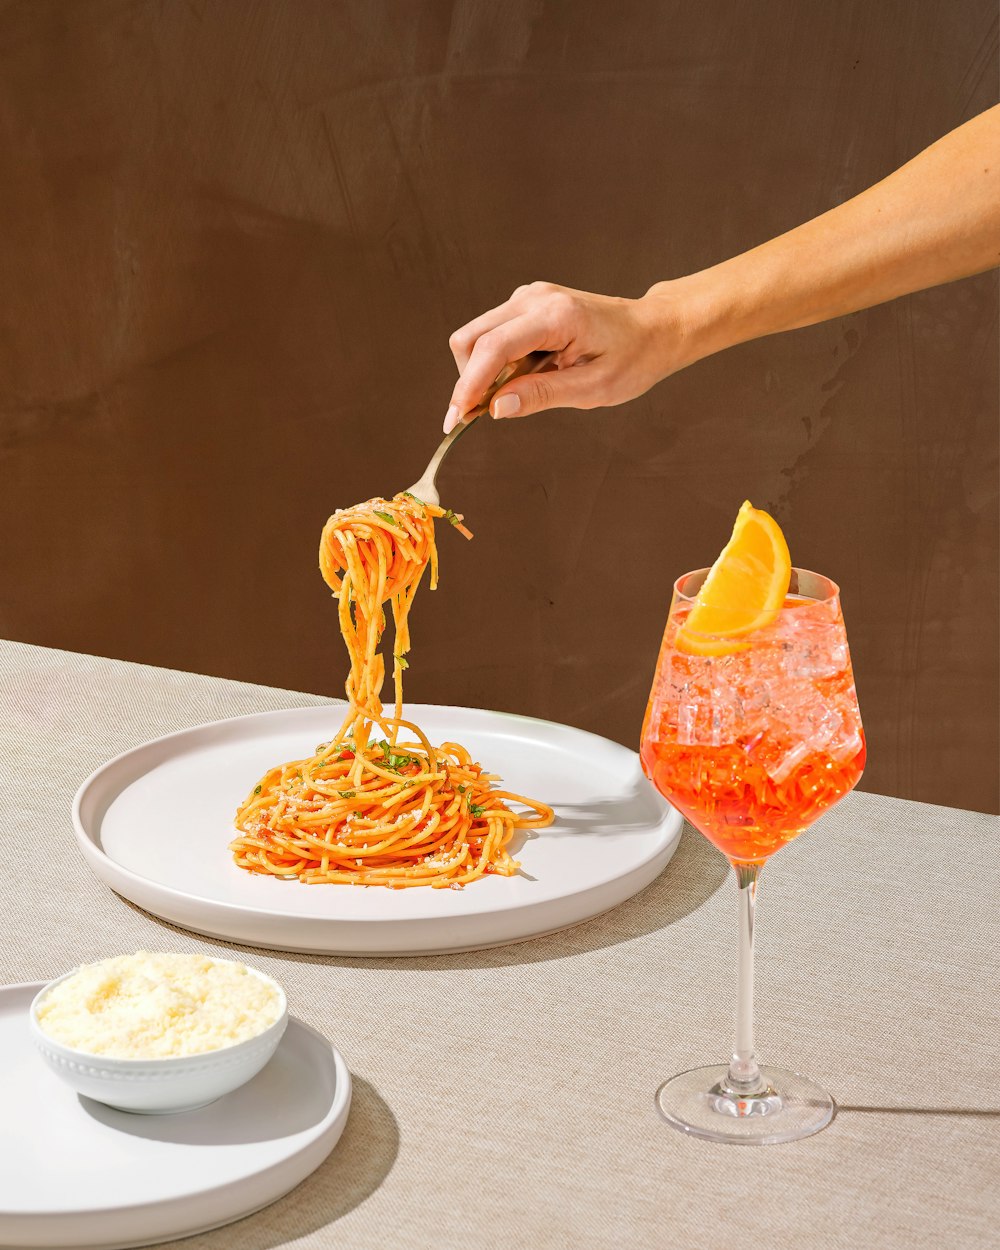 皿の上でスパゲッティを食べている人